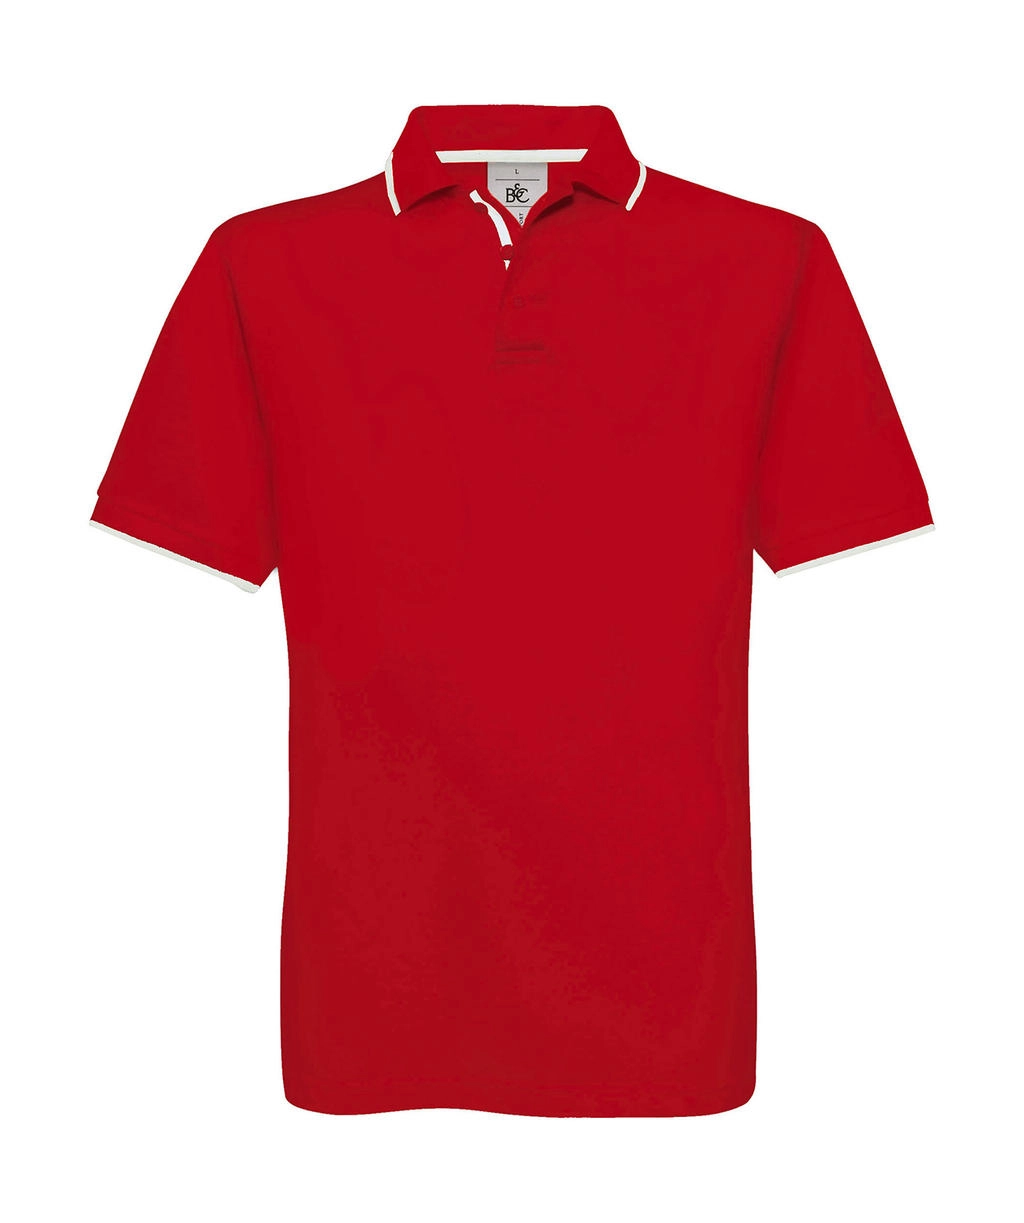 Safran Sport Tipped Polo zum Besticken und Bedrucken in der Farbe Red/White mit Ihren Logo, Schriftzug oder Motiv.